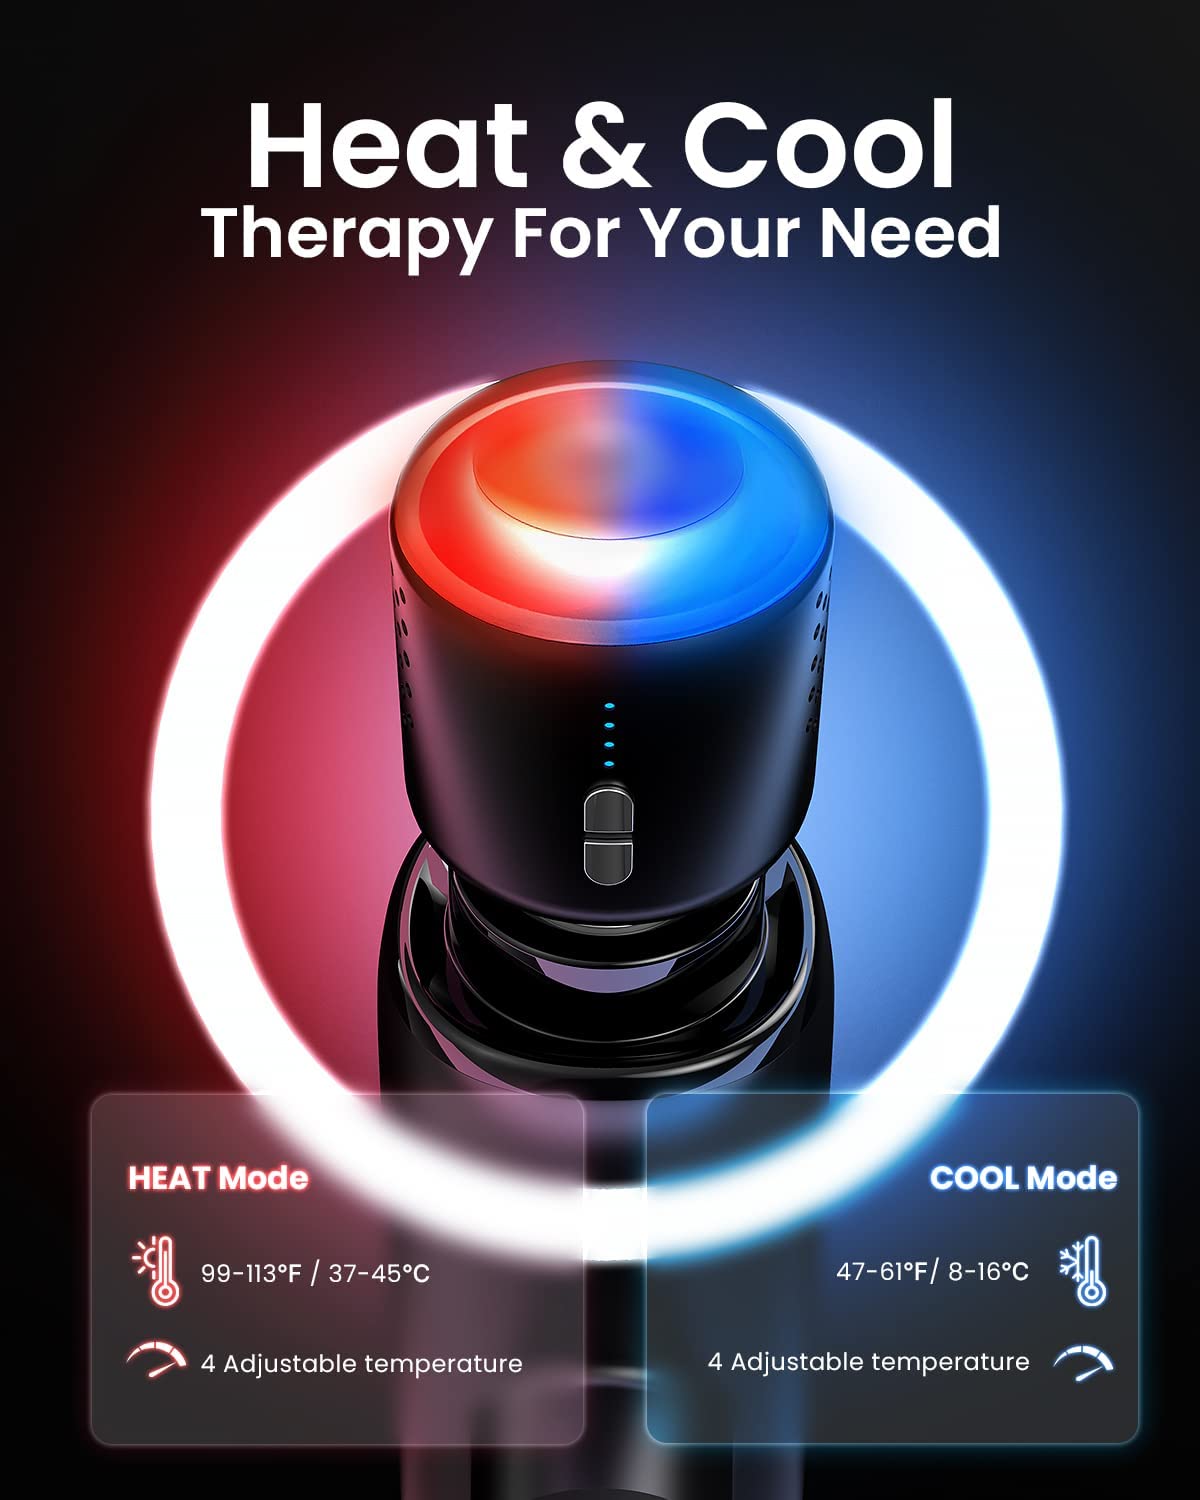 Eine digitale Werbung für die RENPHO Aktiv-Massagepistole Thermacool mit „Heat & Cool Therapy“ zur Muskelentspannung mit leuchtend blauer und roter Oberfläche. Das Bild zeigt Temperaturbereiche für den Wärmemodus von Renpho DE.